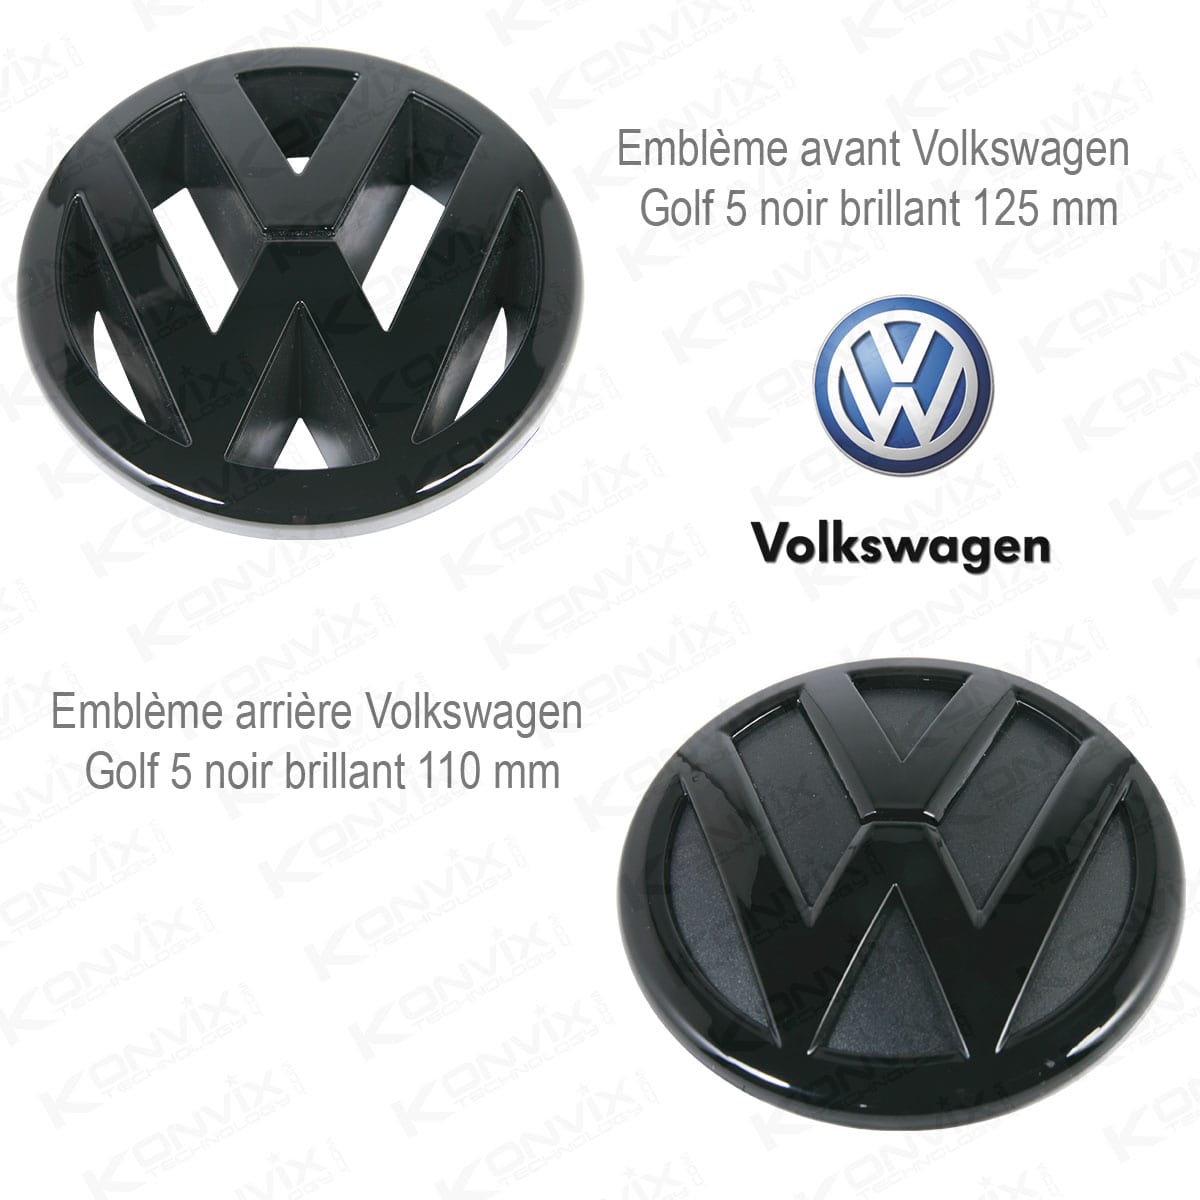 Emblème avant et arrière Volkswagen Golf 5 noir brillant 125 mm et 110 mm